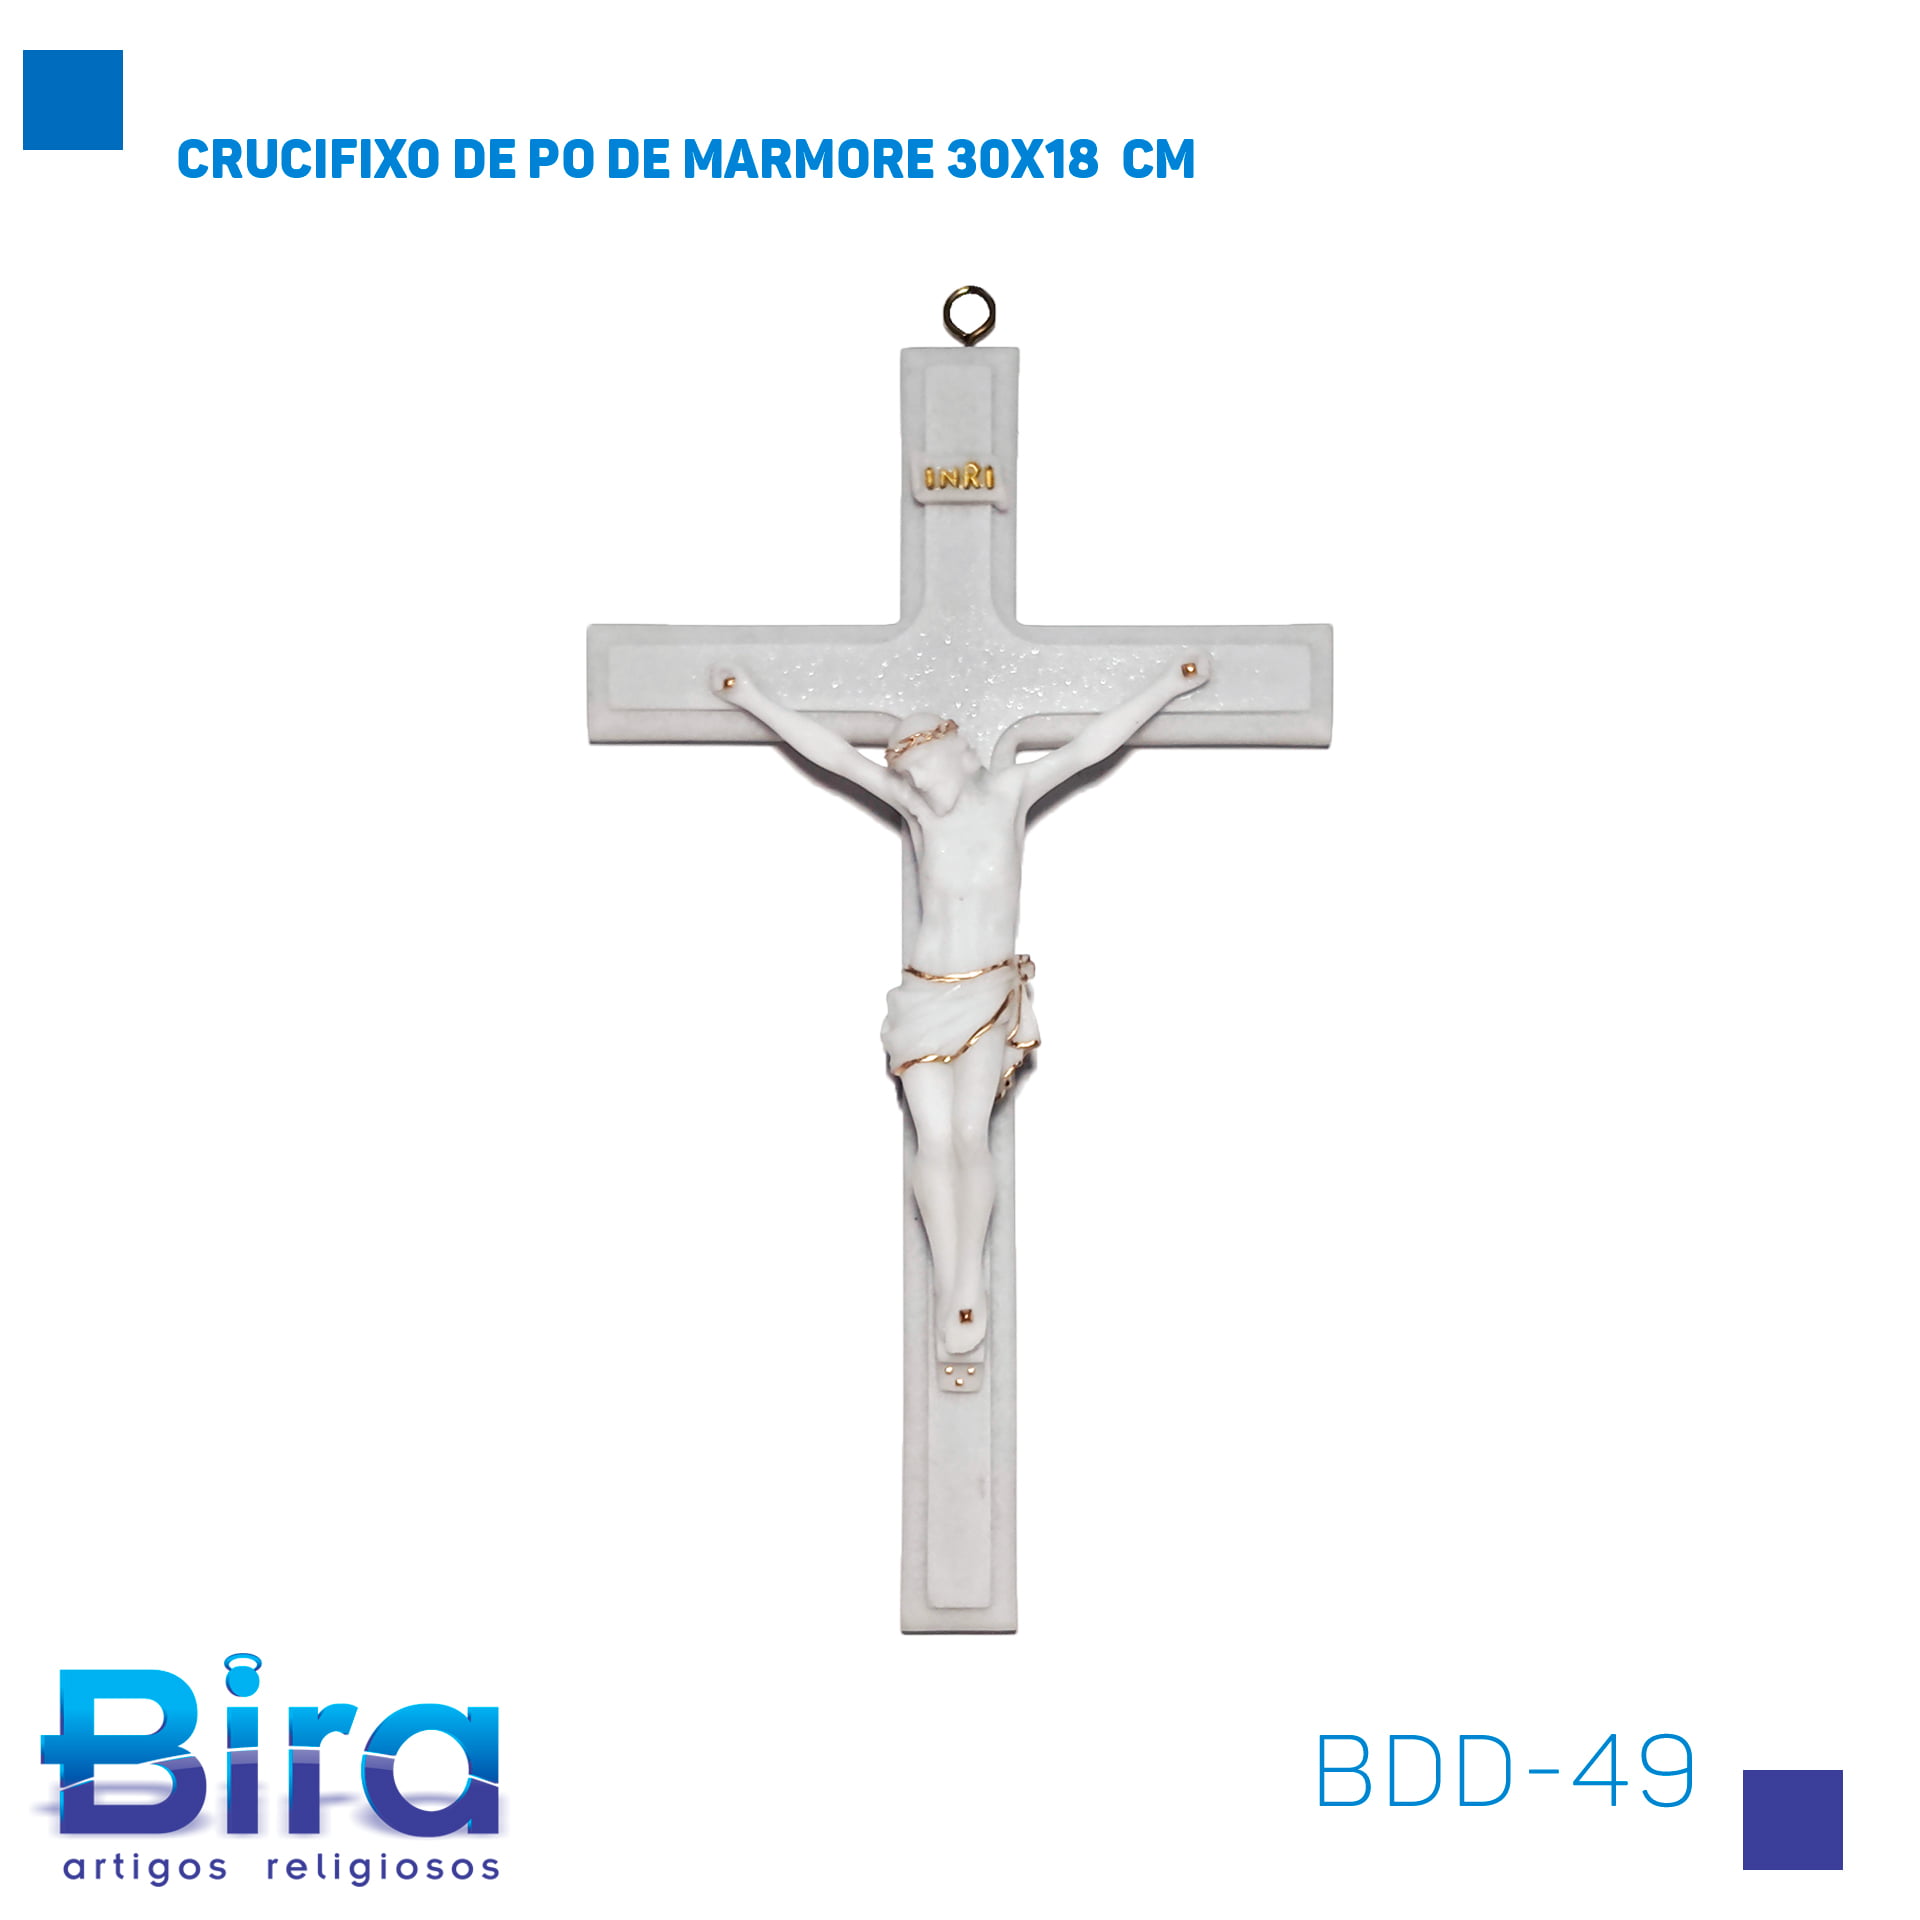 Bira Artigos Religiosos - CRUCIFIXO DE PO DE MARMORE 30X18  CM CÓD.: BDD-49